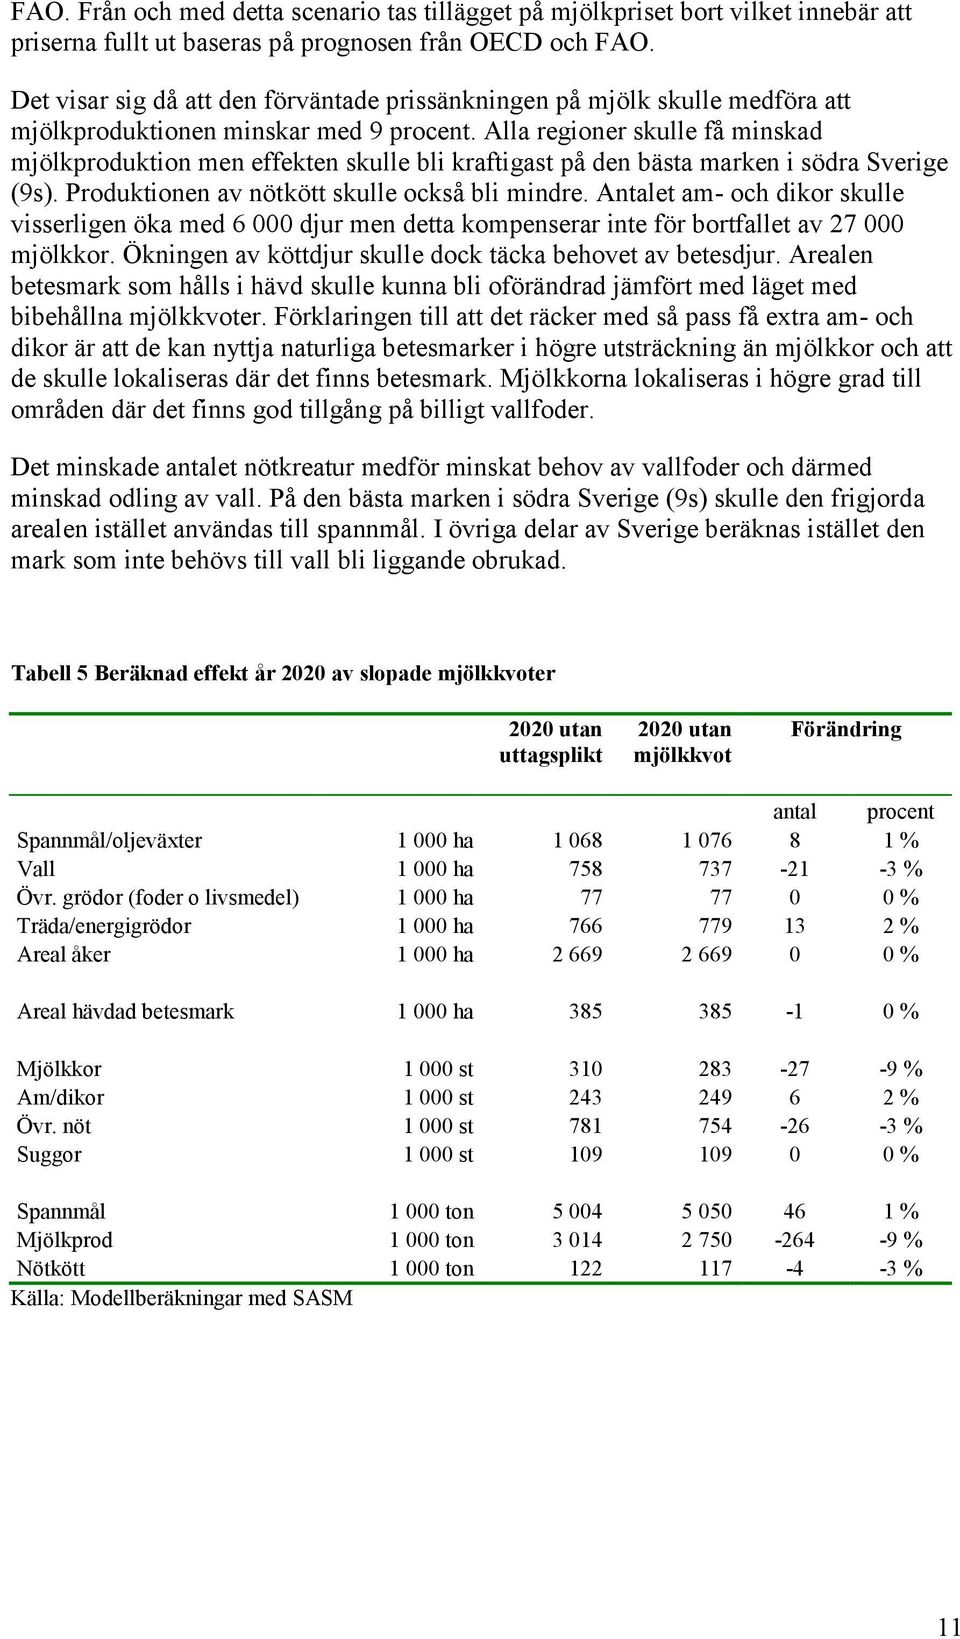 Alla regioner skulle få minskad mjölkproduktion men effekten skulle bli kraftigast på den bästa marken i södra Sverige (9s). Produktionen av nötkött skulle också bli mindre.